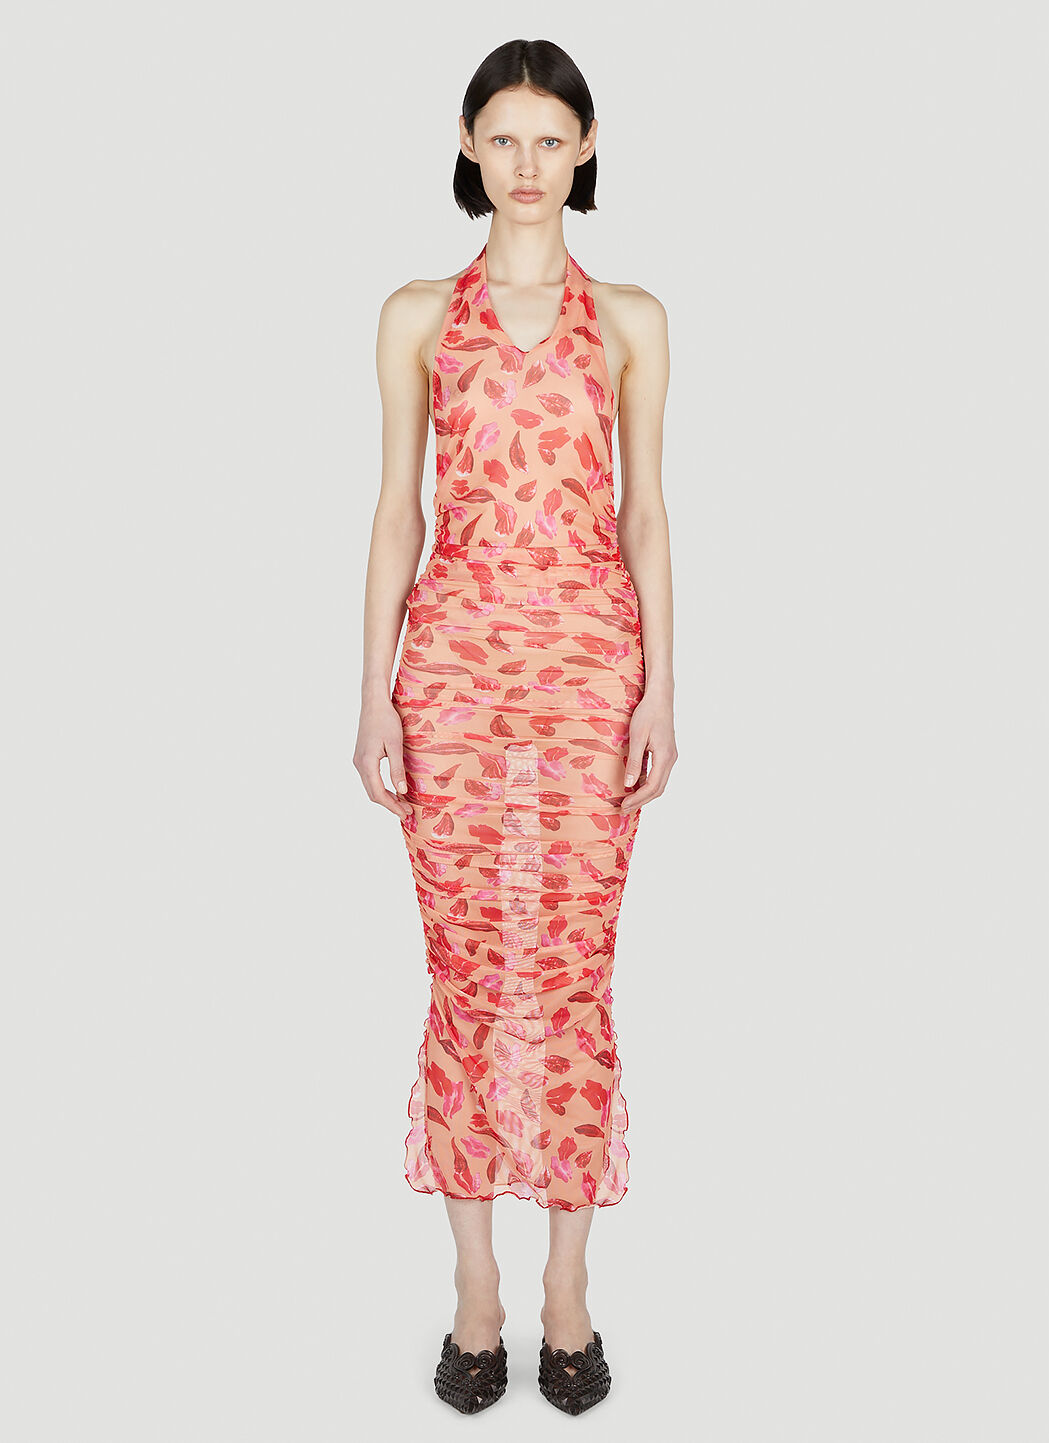 Marco Rambaldi Lips Print Dress Pink mra0252012